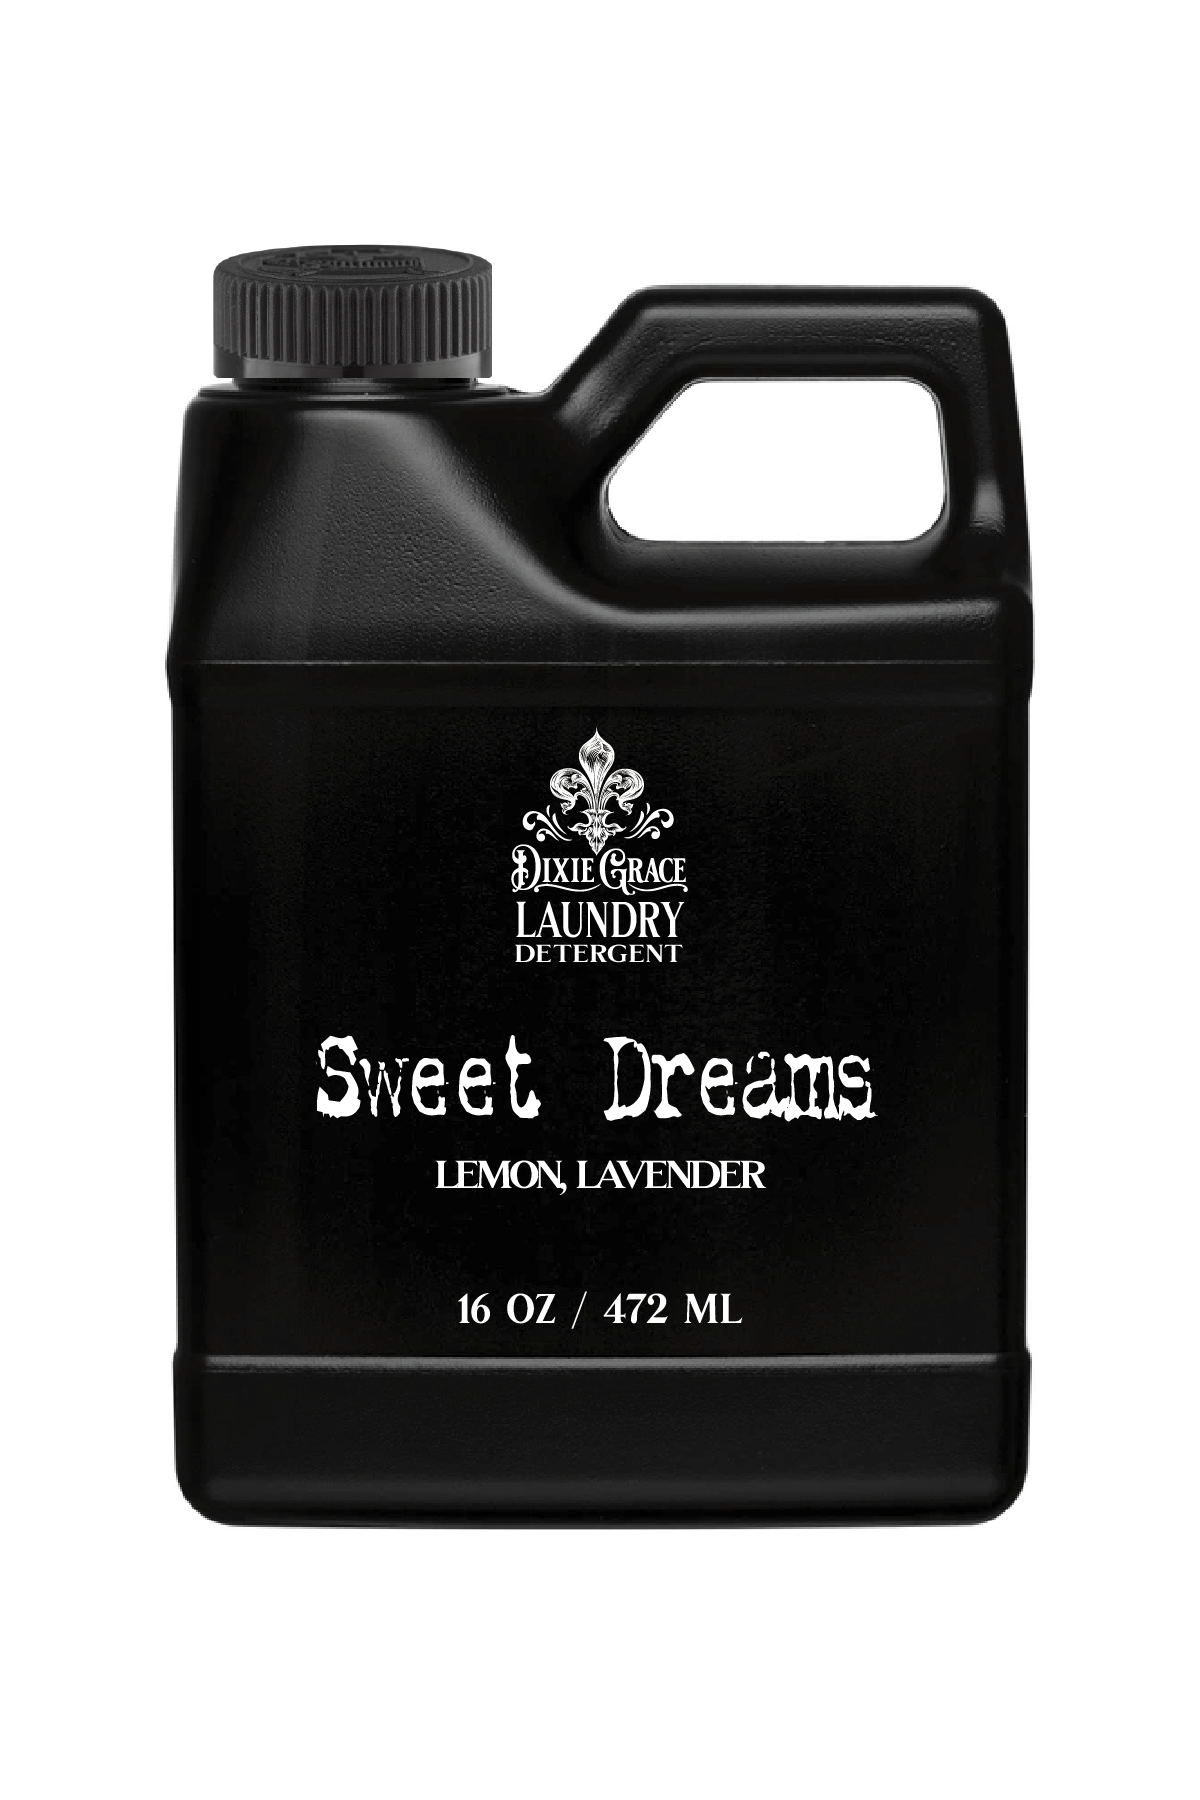 Dixie Grace - Sweet Dreams - Laundry Detergent